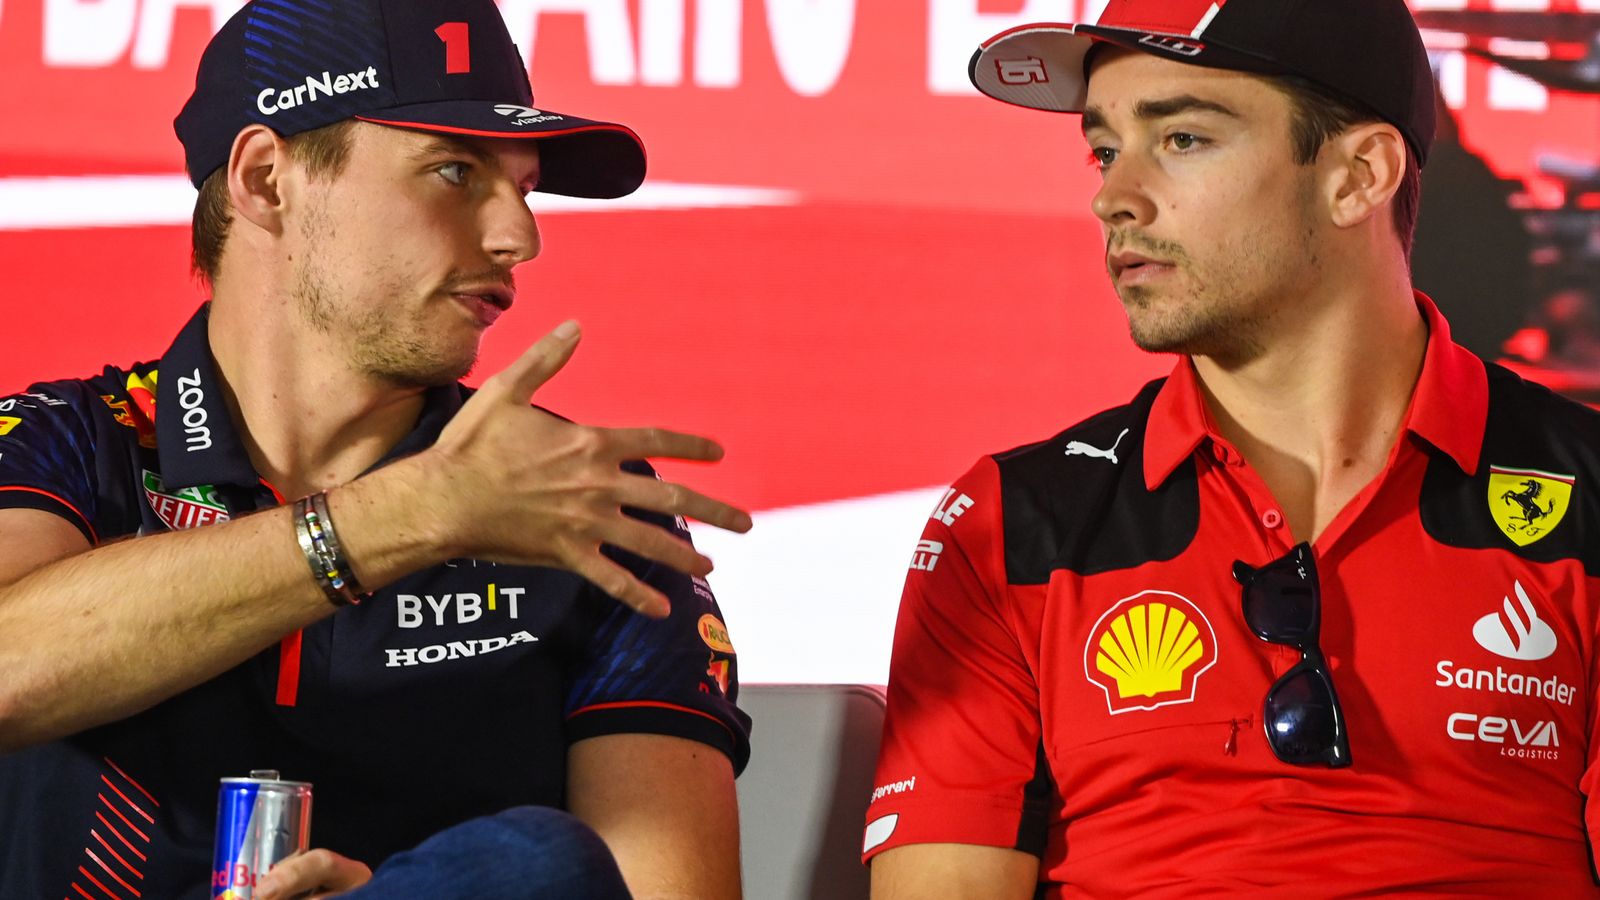 Charles Leclerc está ‘seguro’ de que Ferrari puede superar la ventaja de Red Bull para ganar el título de Fórmula 1 en 2023 |  Noticias F1